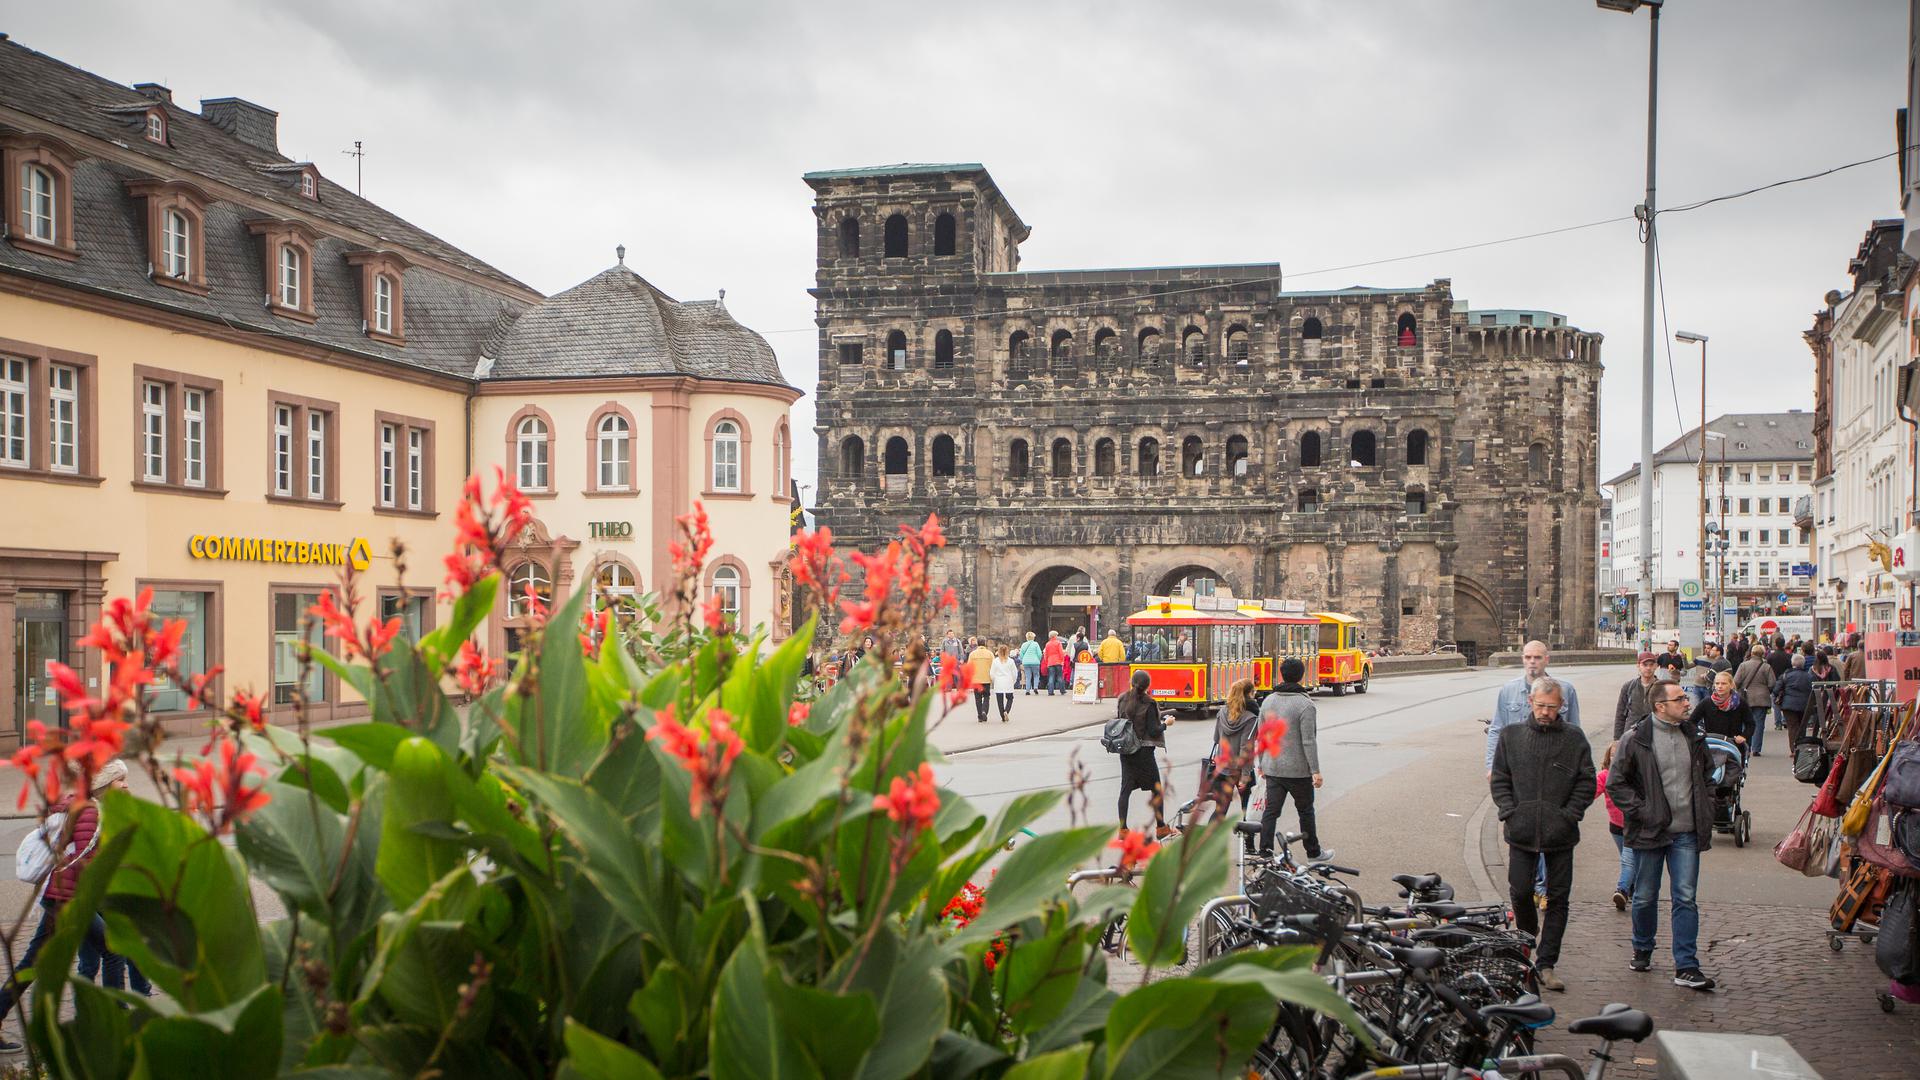 Die Stadt Trier stellt das Konzept von Pufferzonen vor, um die antiken Bauten besser zu schützen.